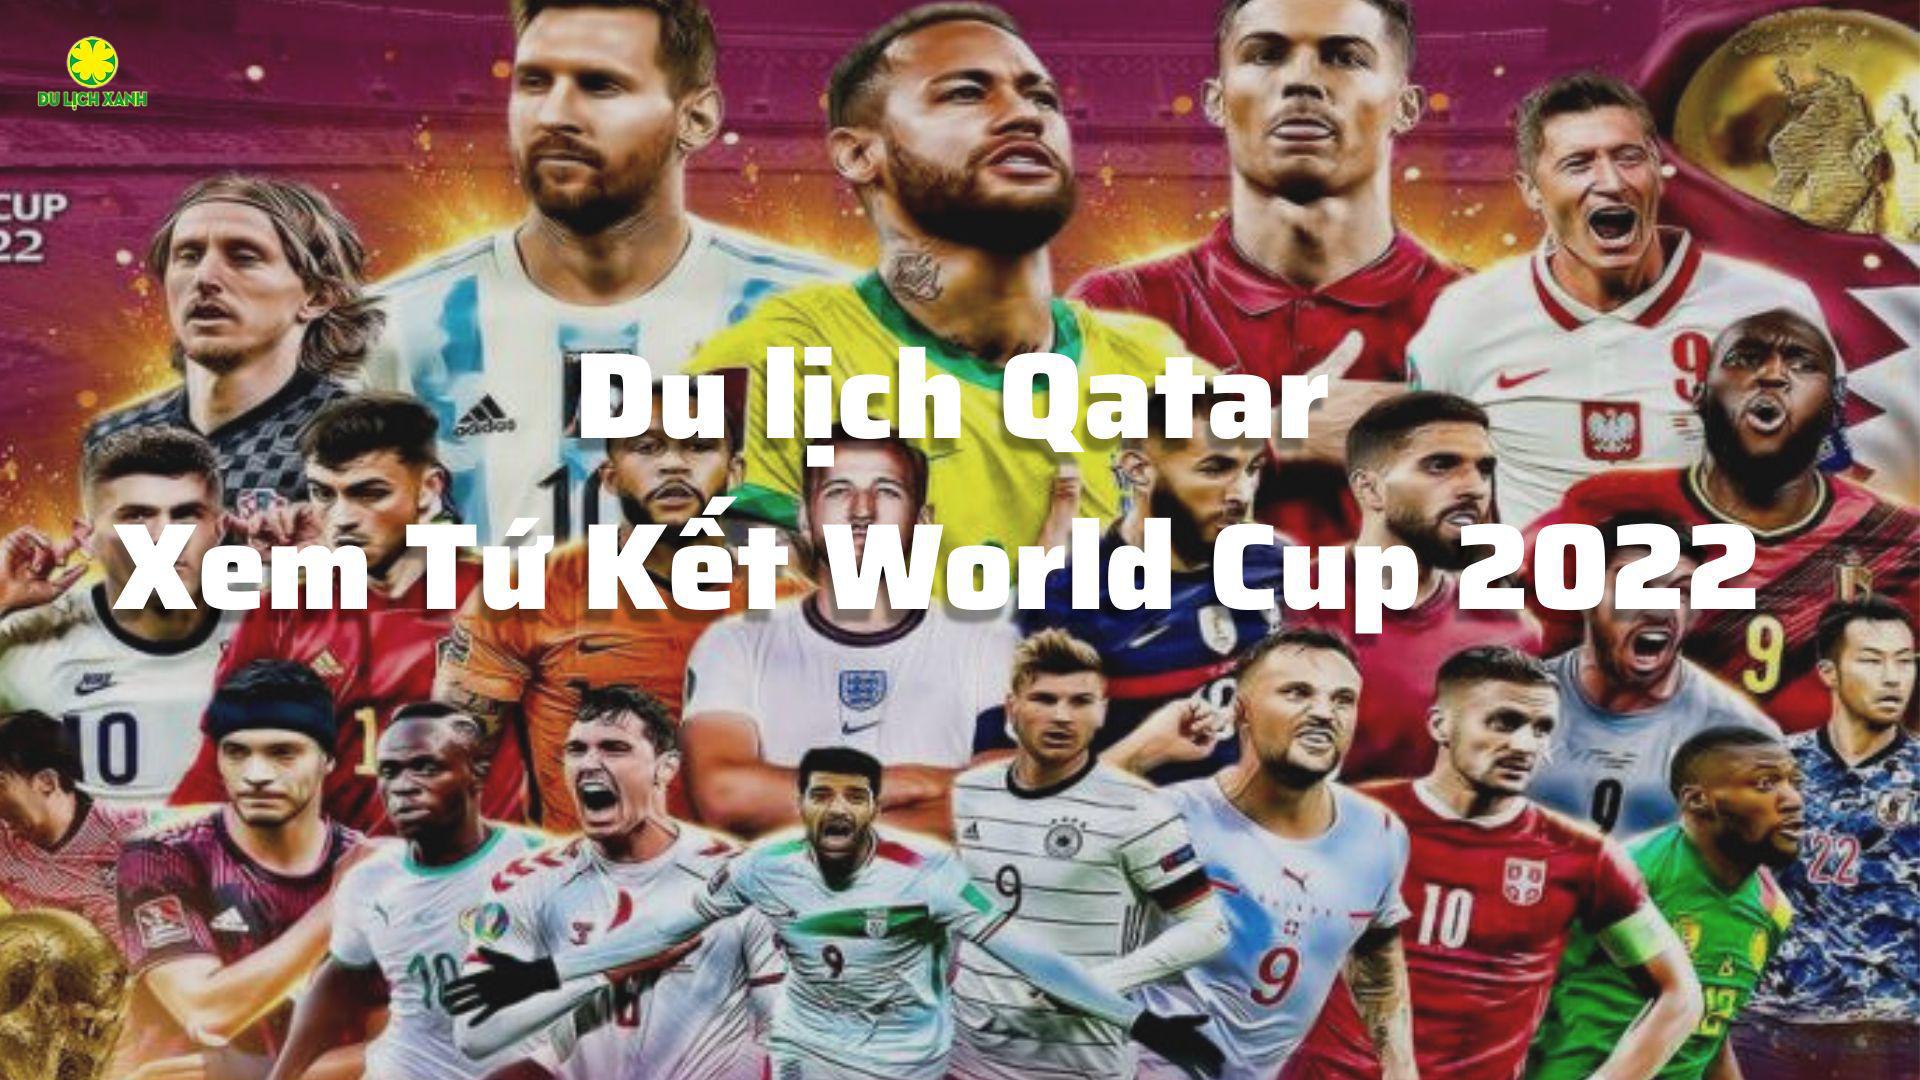 Xem Tứ Kết World Cup 2022 Du lịch Qatar 5N4D giá rẻ